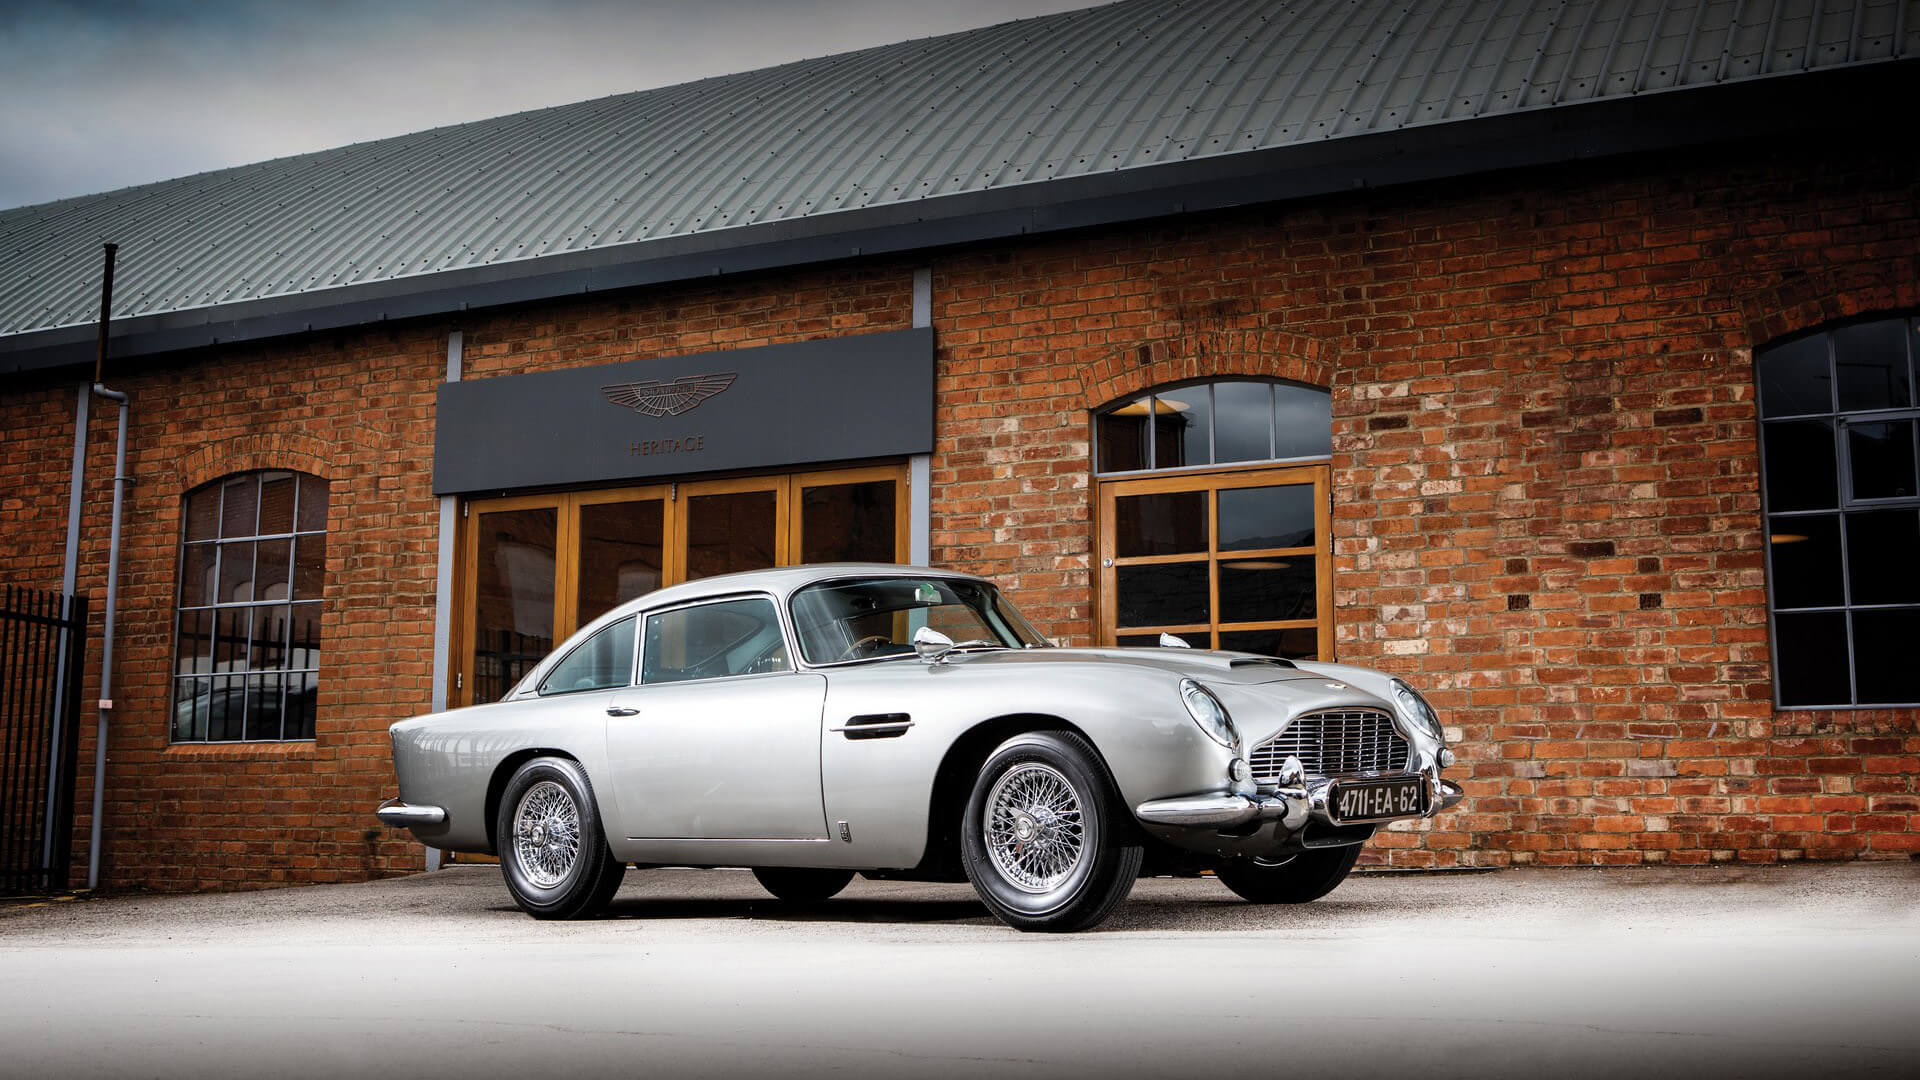 Σε δημοπρασία η Aston Martin DB5 του James Bond [vid]